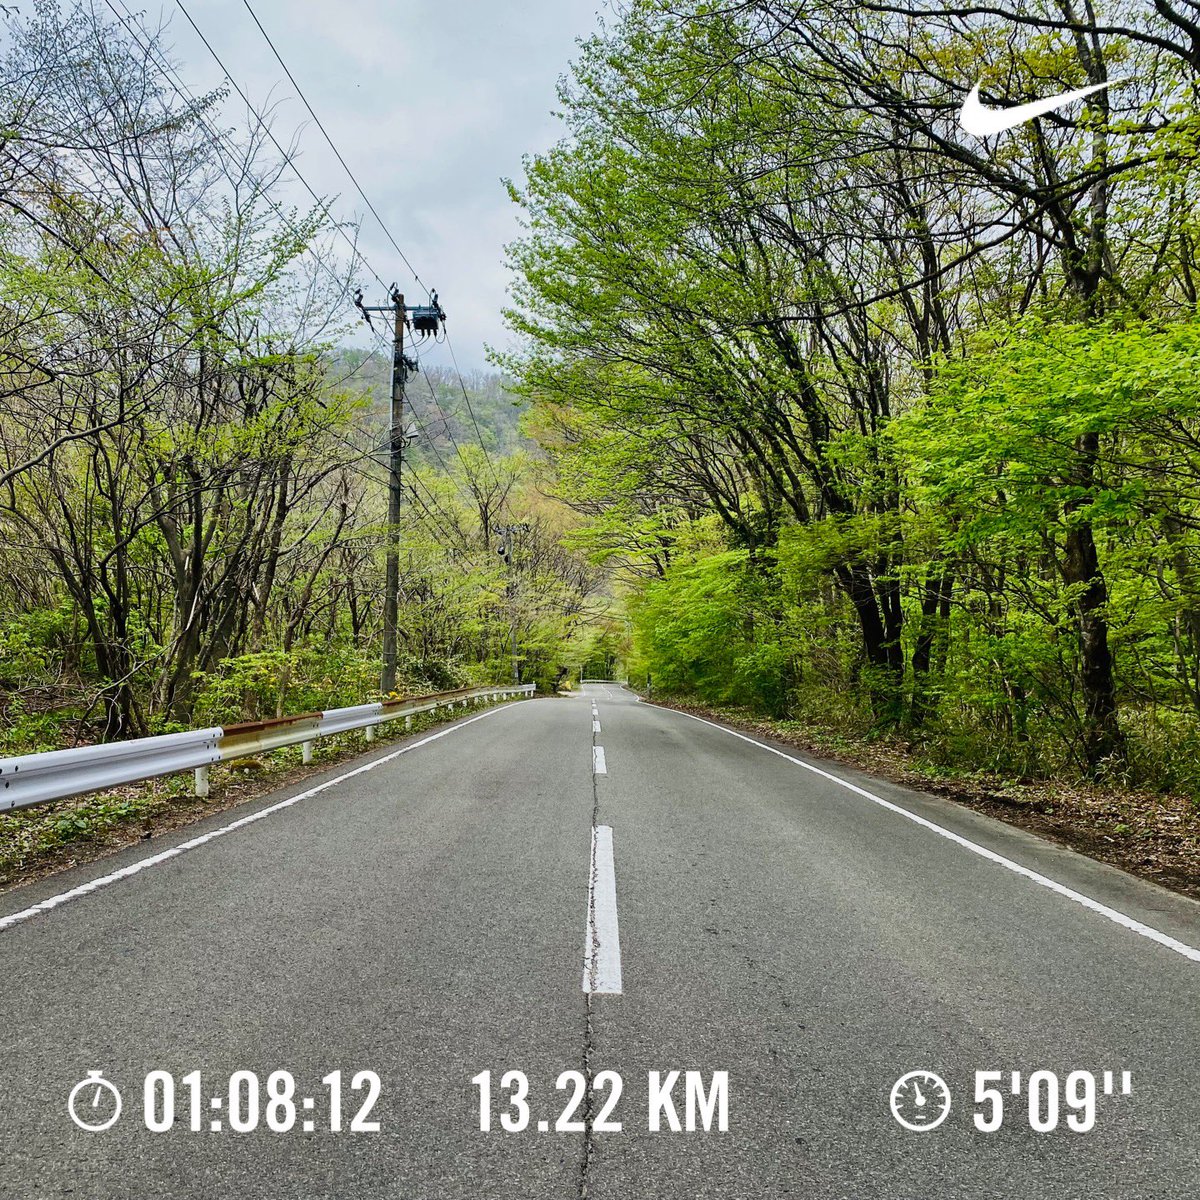 EASY JOG ✔︎
A steady 13km run

Workout total＝Run →1222 times

#nike #running #pegasus40 #japan #nikerunner #easyjog #走れる事に感謝 #garmin